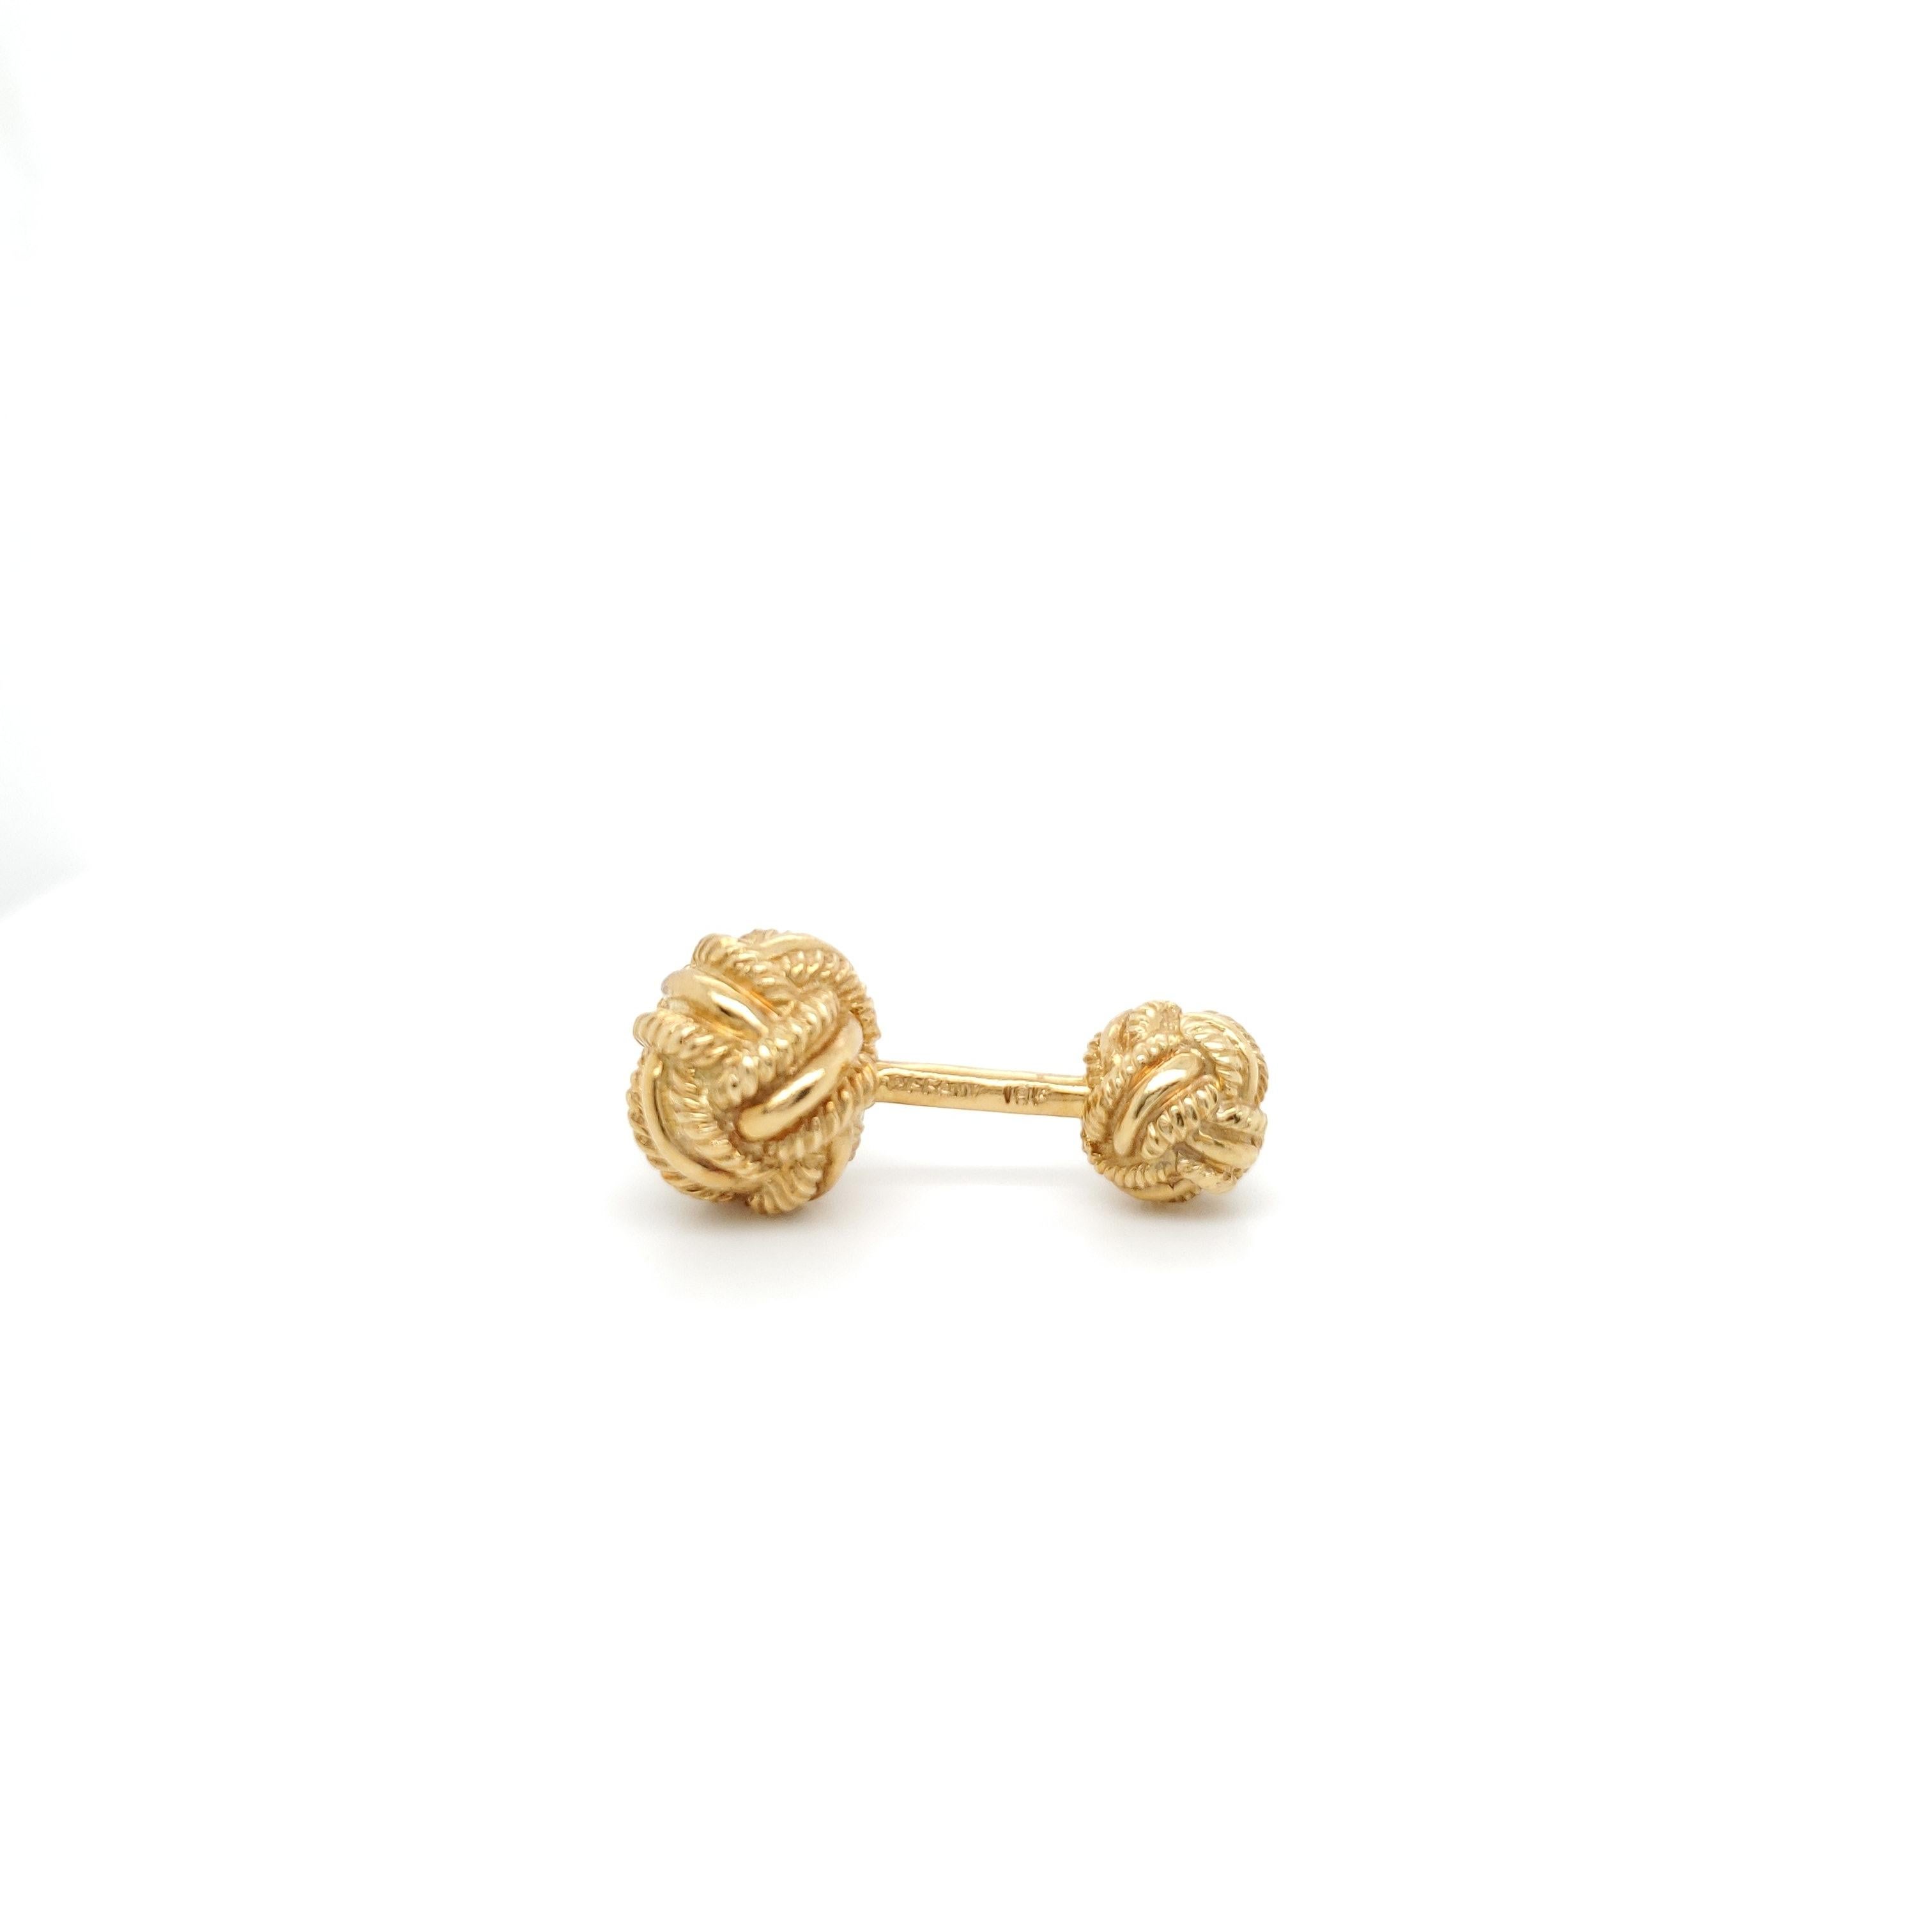 Tiffany & Co. Schlumberger Gold Woven Knot Cufflinks 1